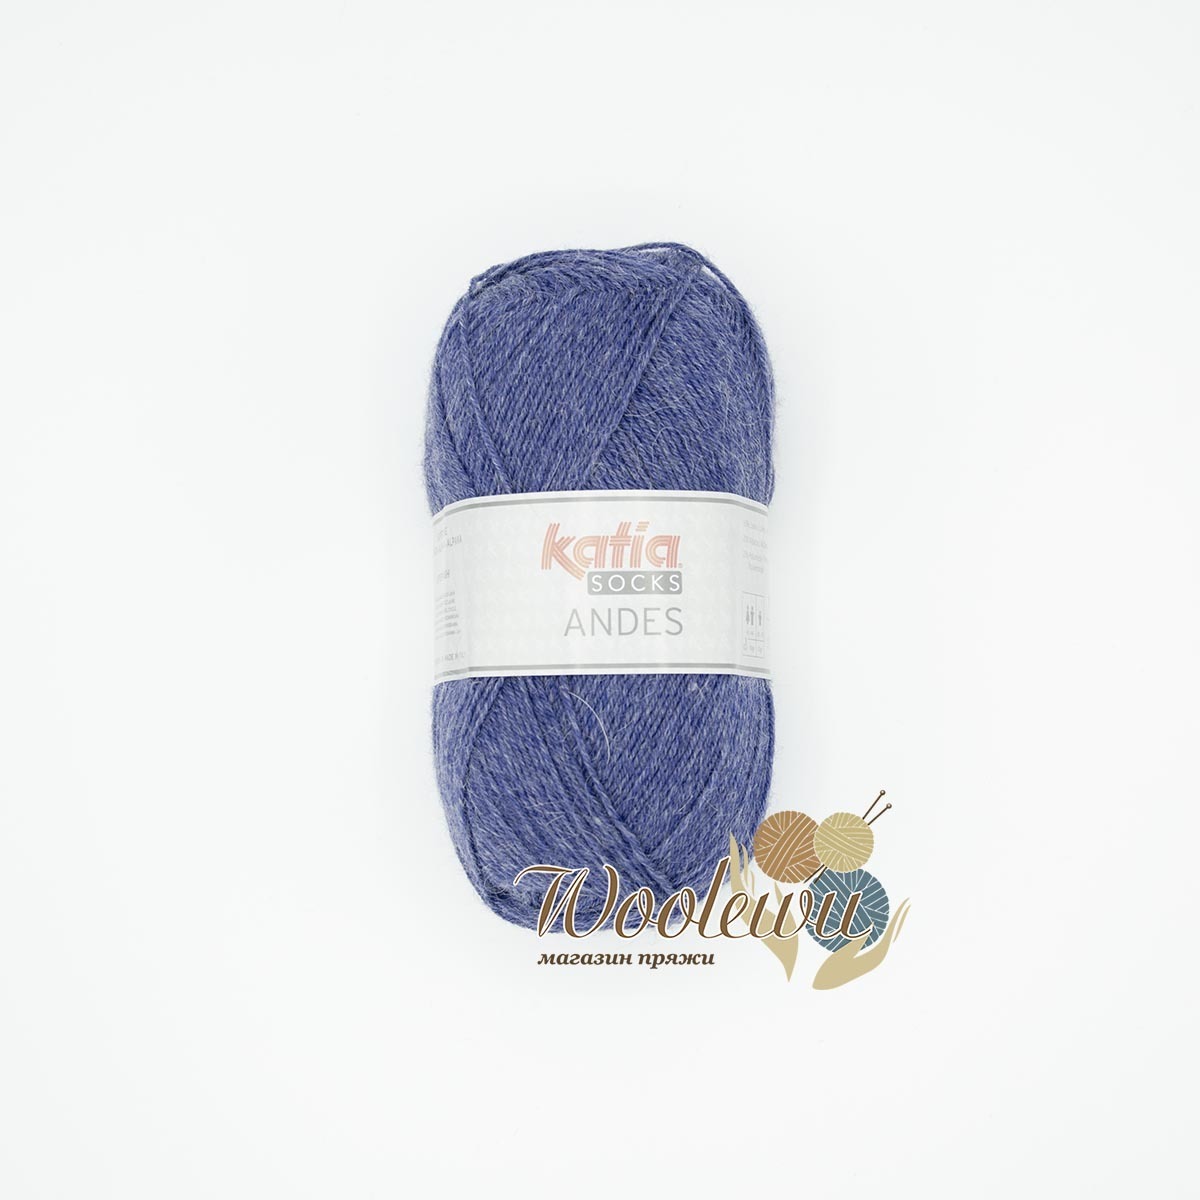 Katia Andes Socks - 203